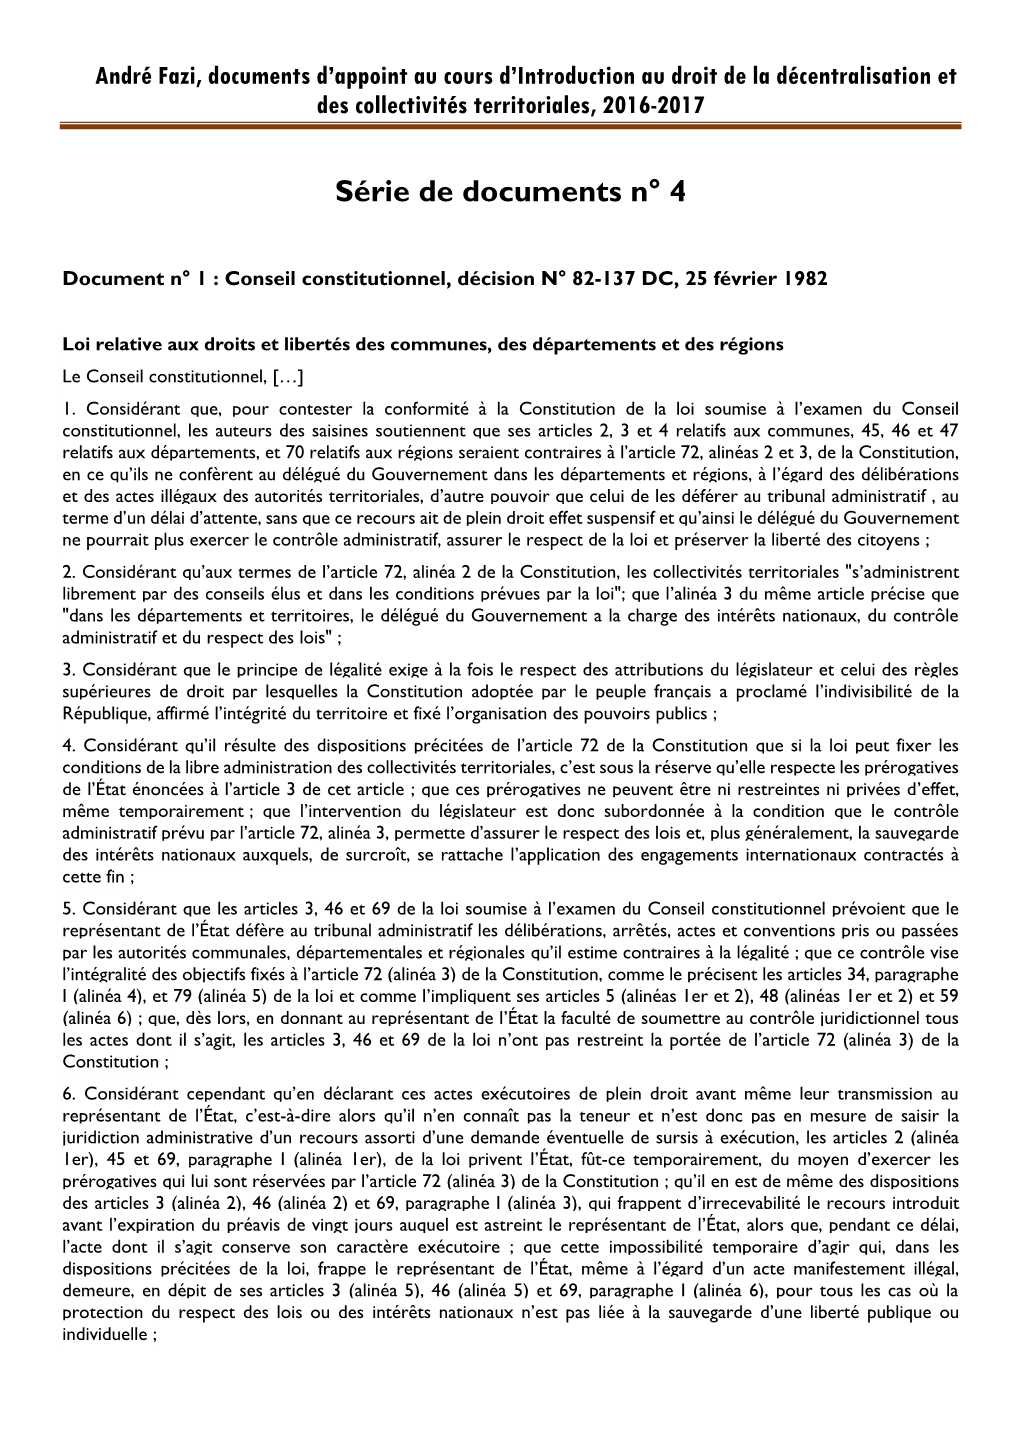 André Fazi, Documents D'appoint Au Cours D'introduction Au Droit De La